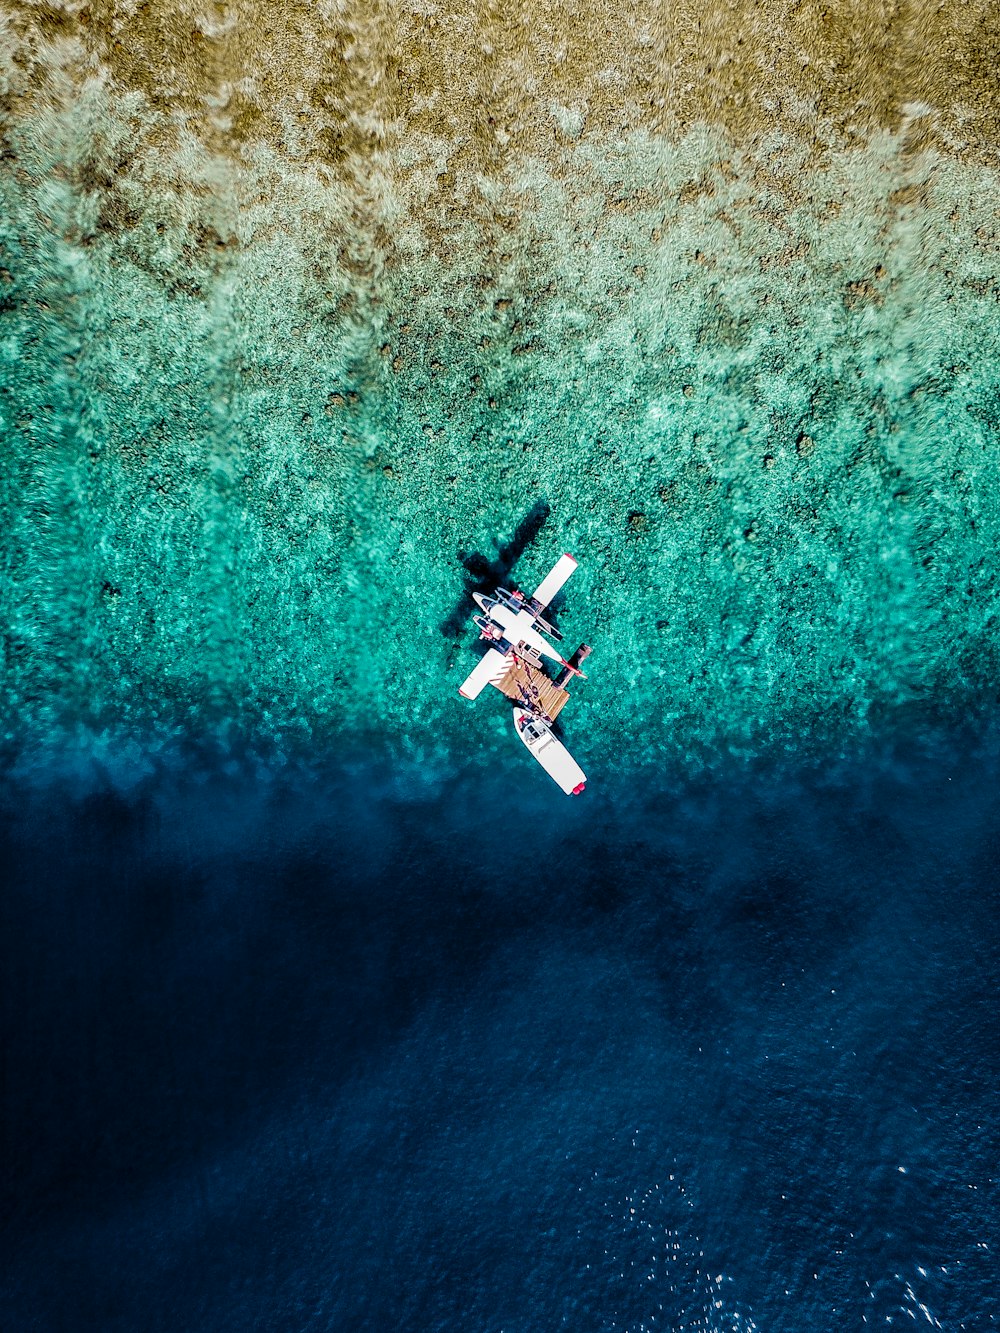 Una vista aérea de un avión volando sobre un cuerpo de agua